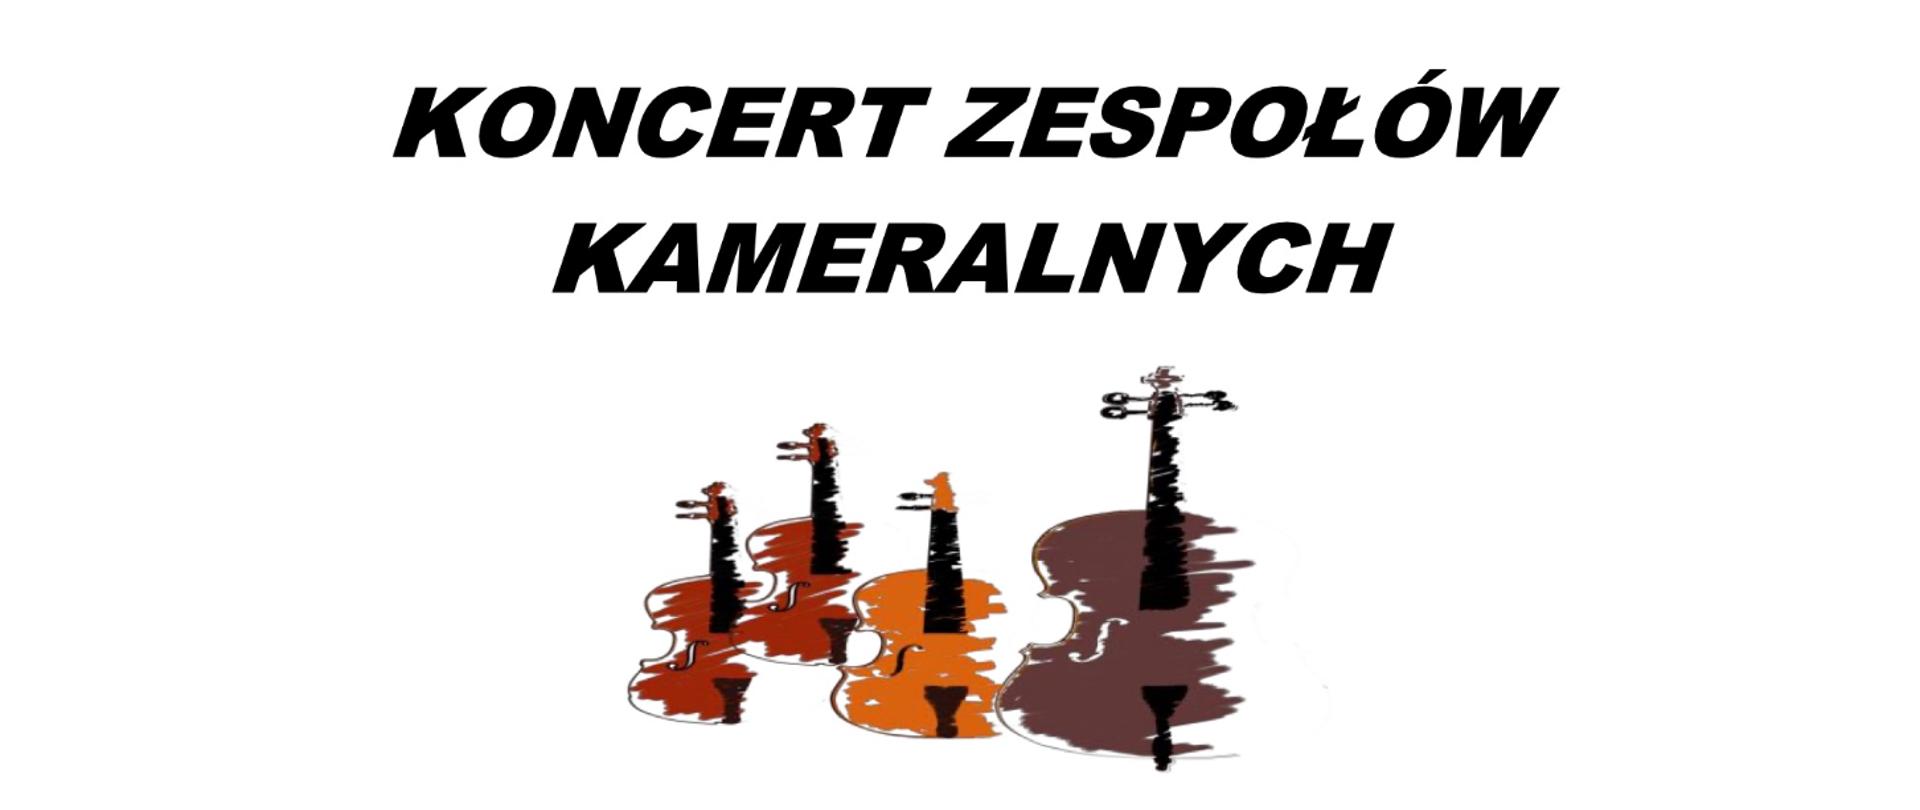 Plakat przedstawia w swej centralnej części 4 kolorowe ikony instrumentów smyczkowych. U góry tekst: koncert zespołów kameralnych